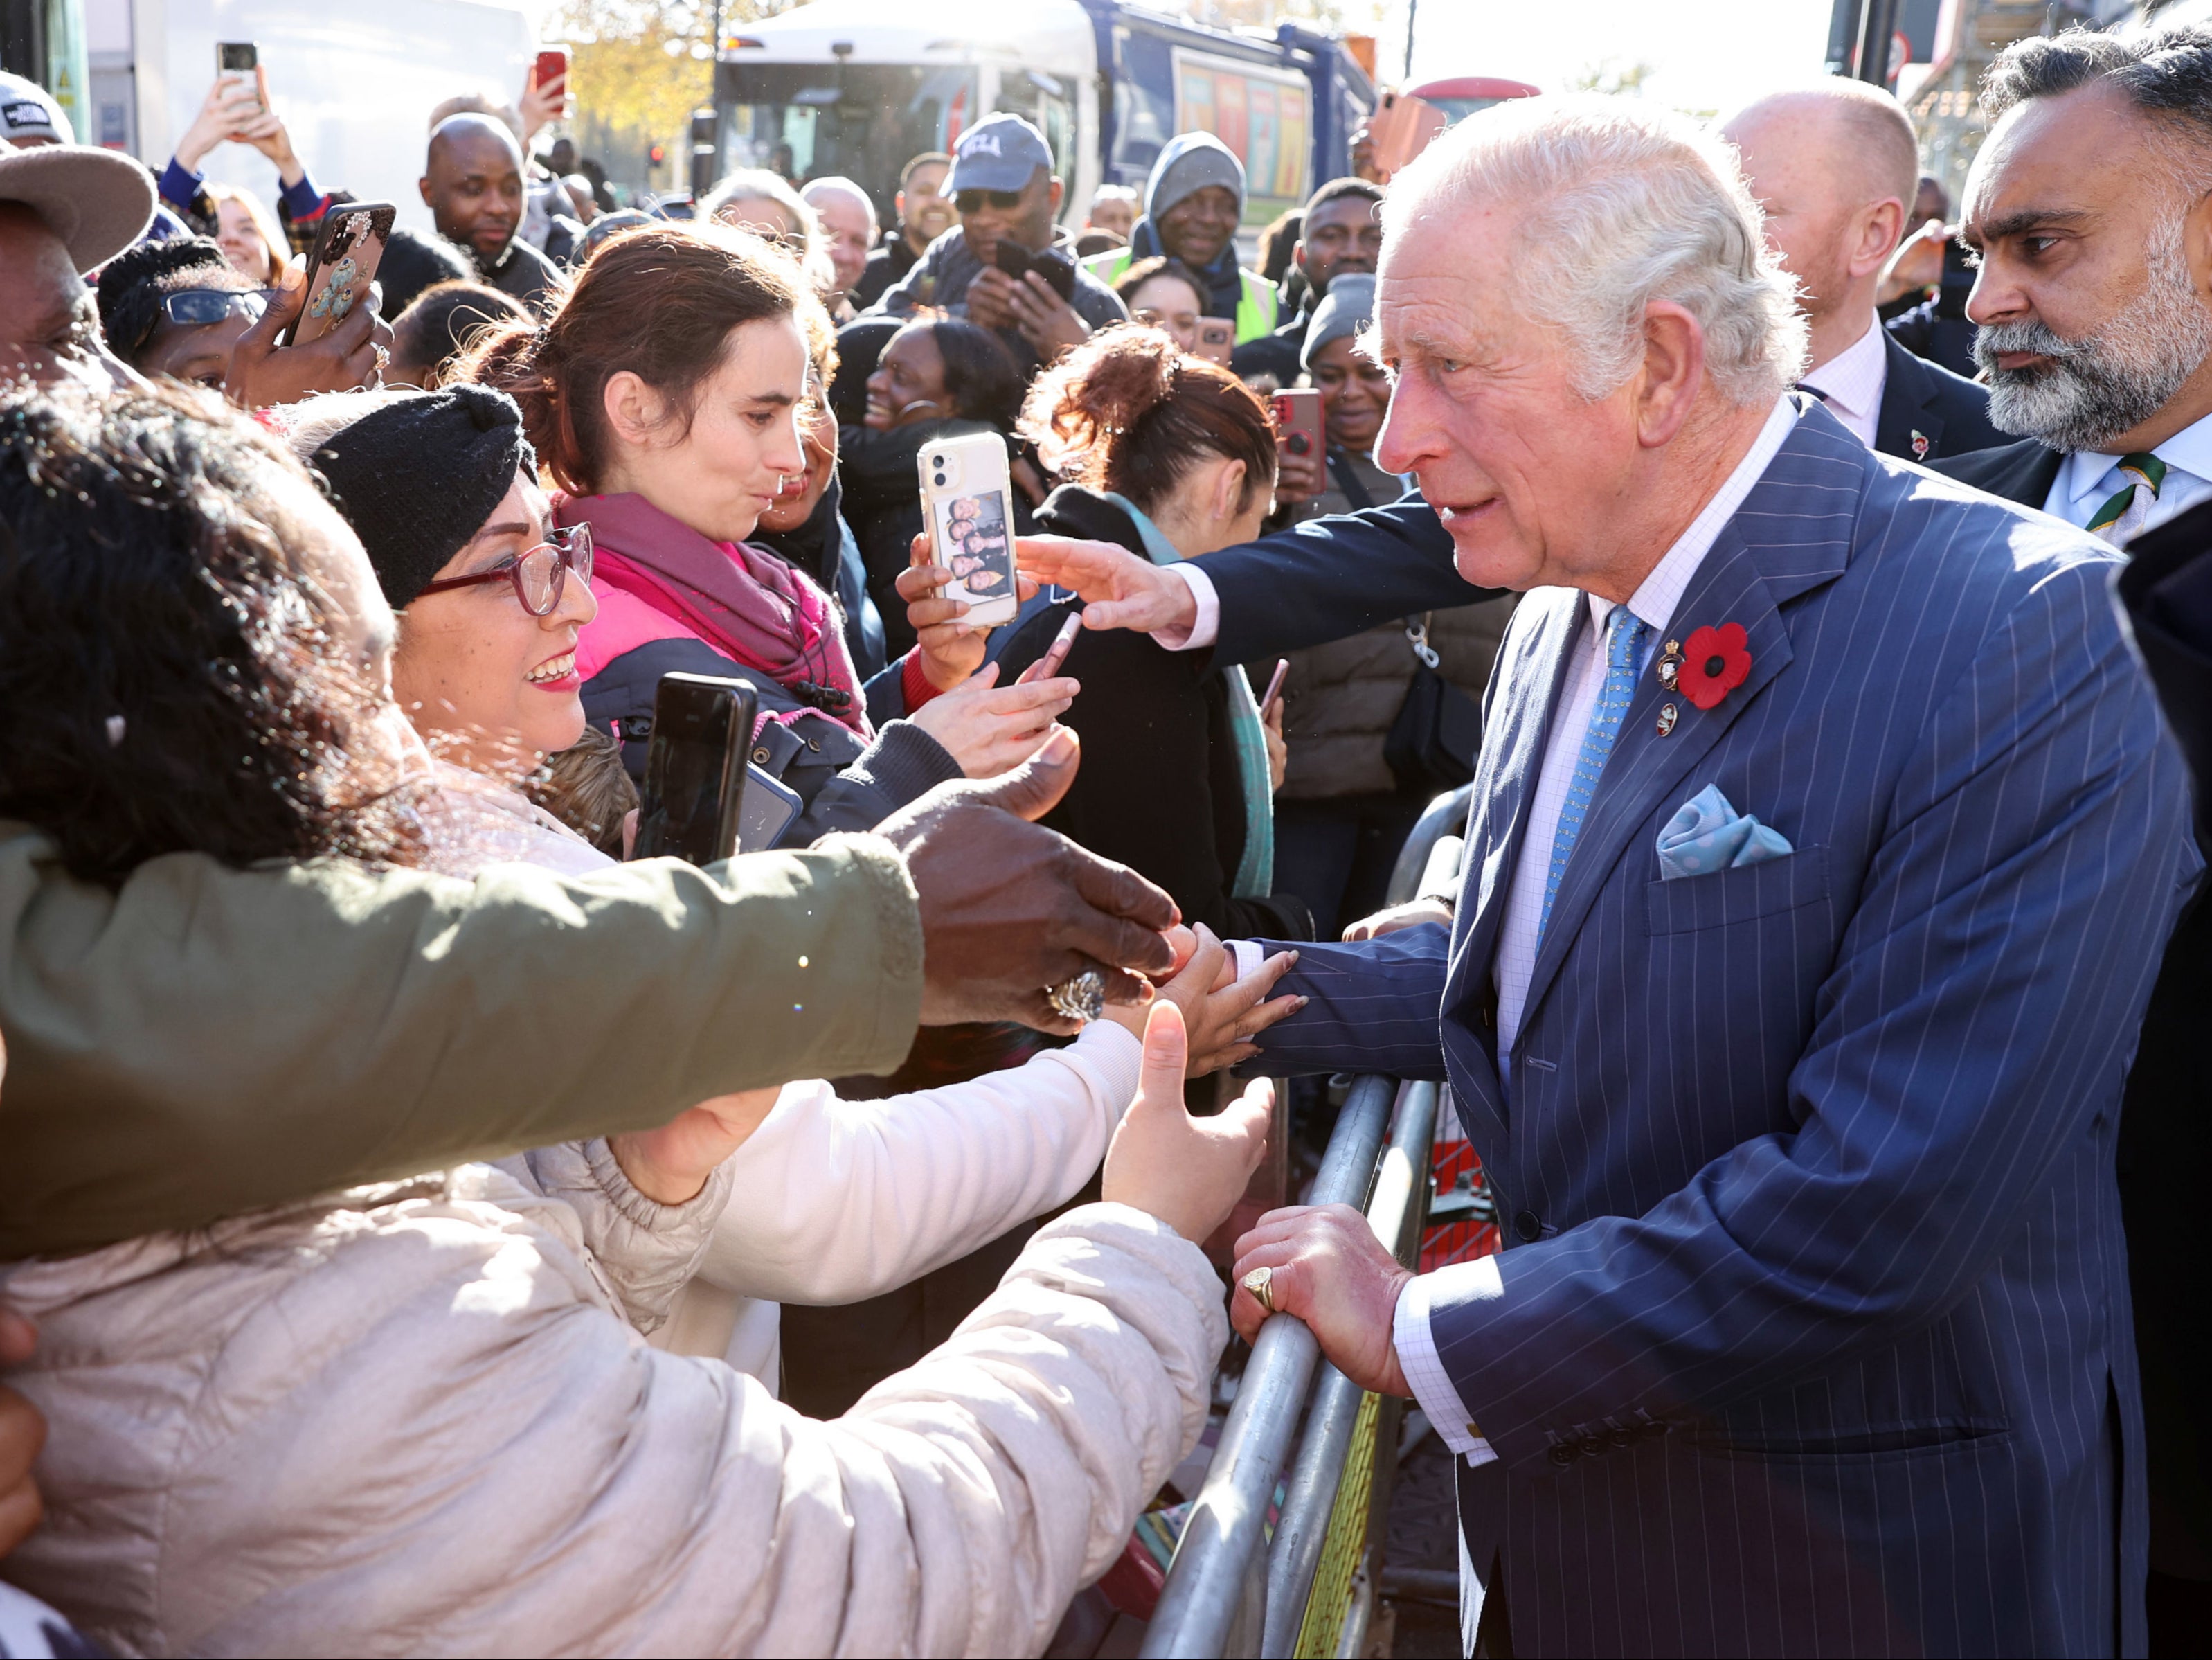 El Príncipe de Gales (derecha) se encuentra con miembros del público cuando sale de una visita para conocer a los jóvenes emprendedores de Prince's Trust, apoyados a través del programa Enterprise en NatWest, en Londres.